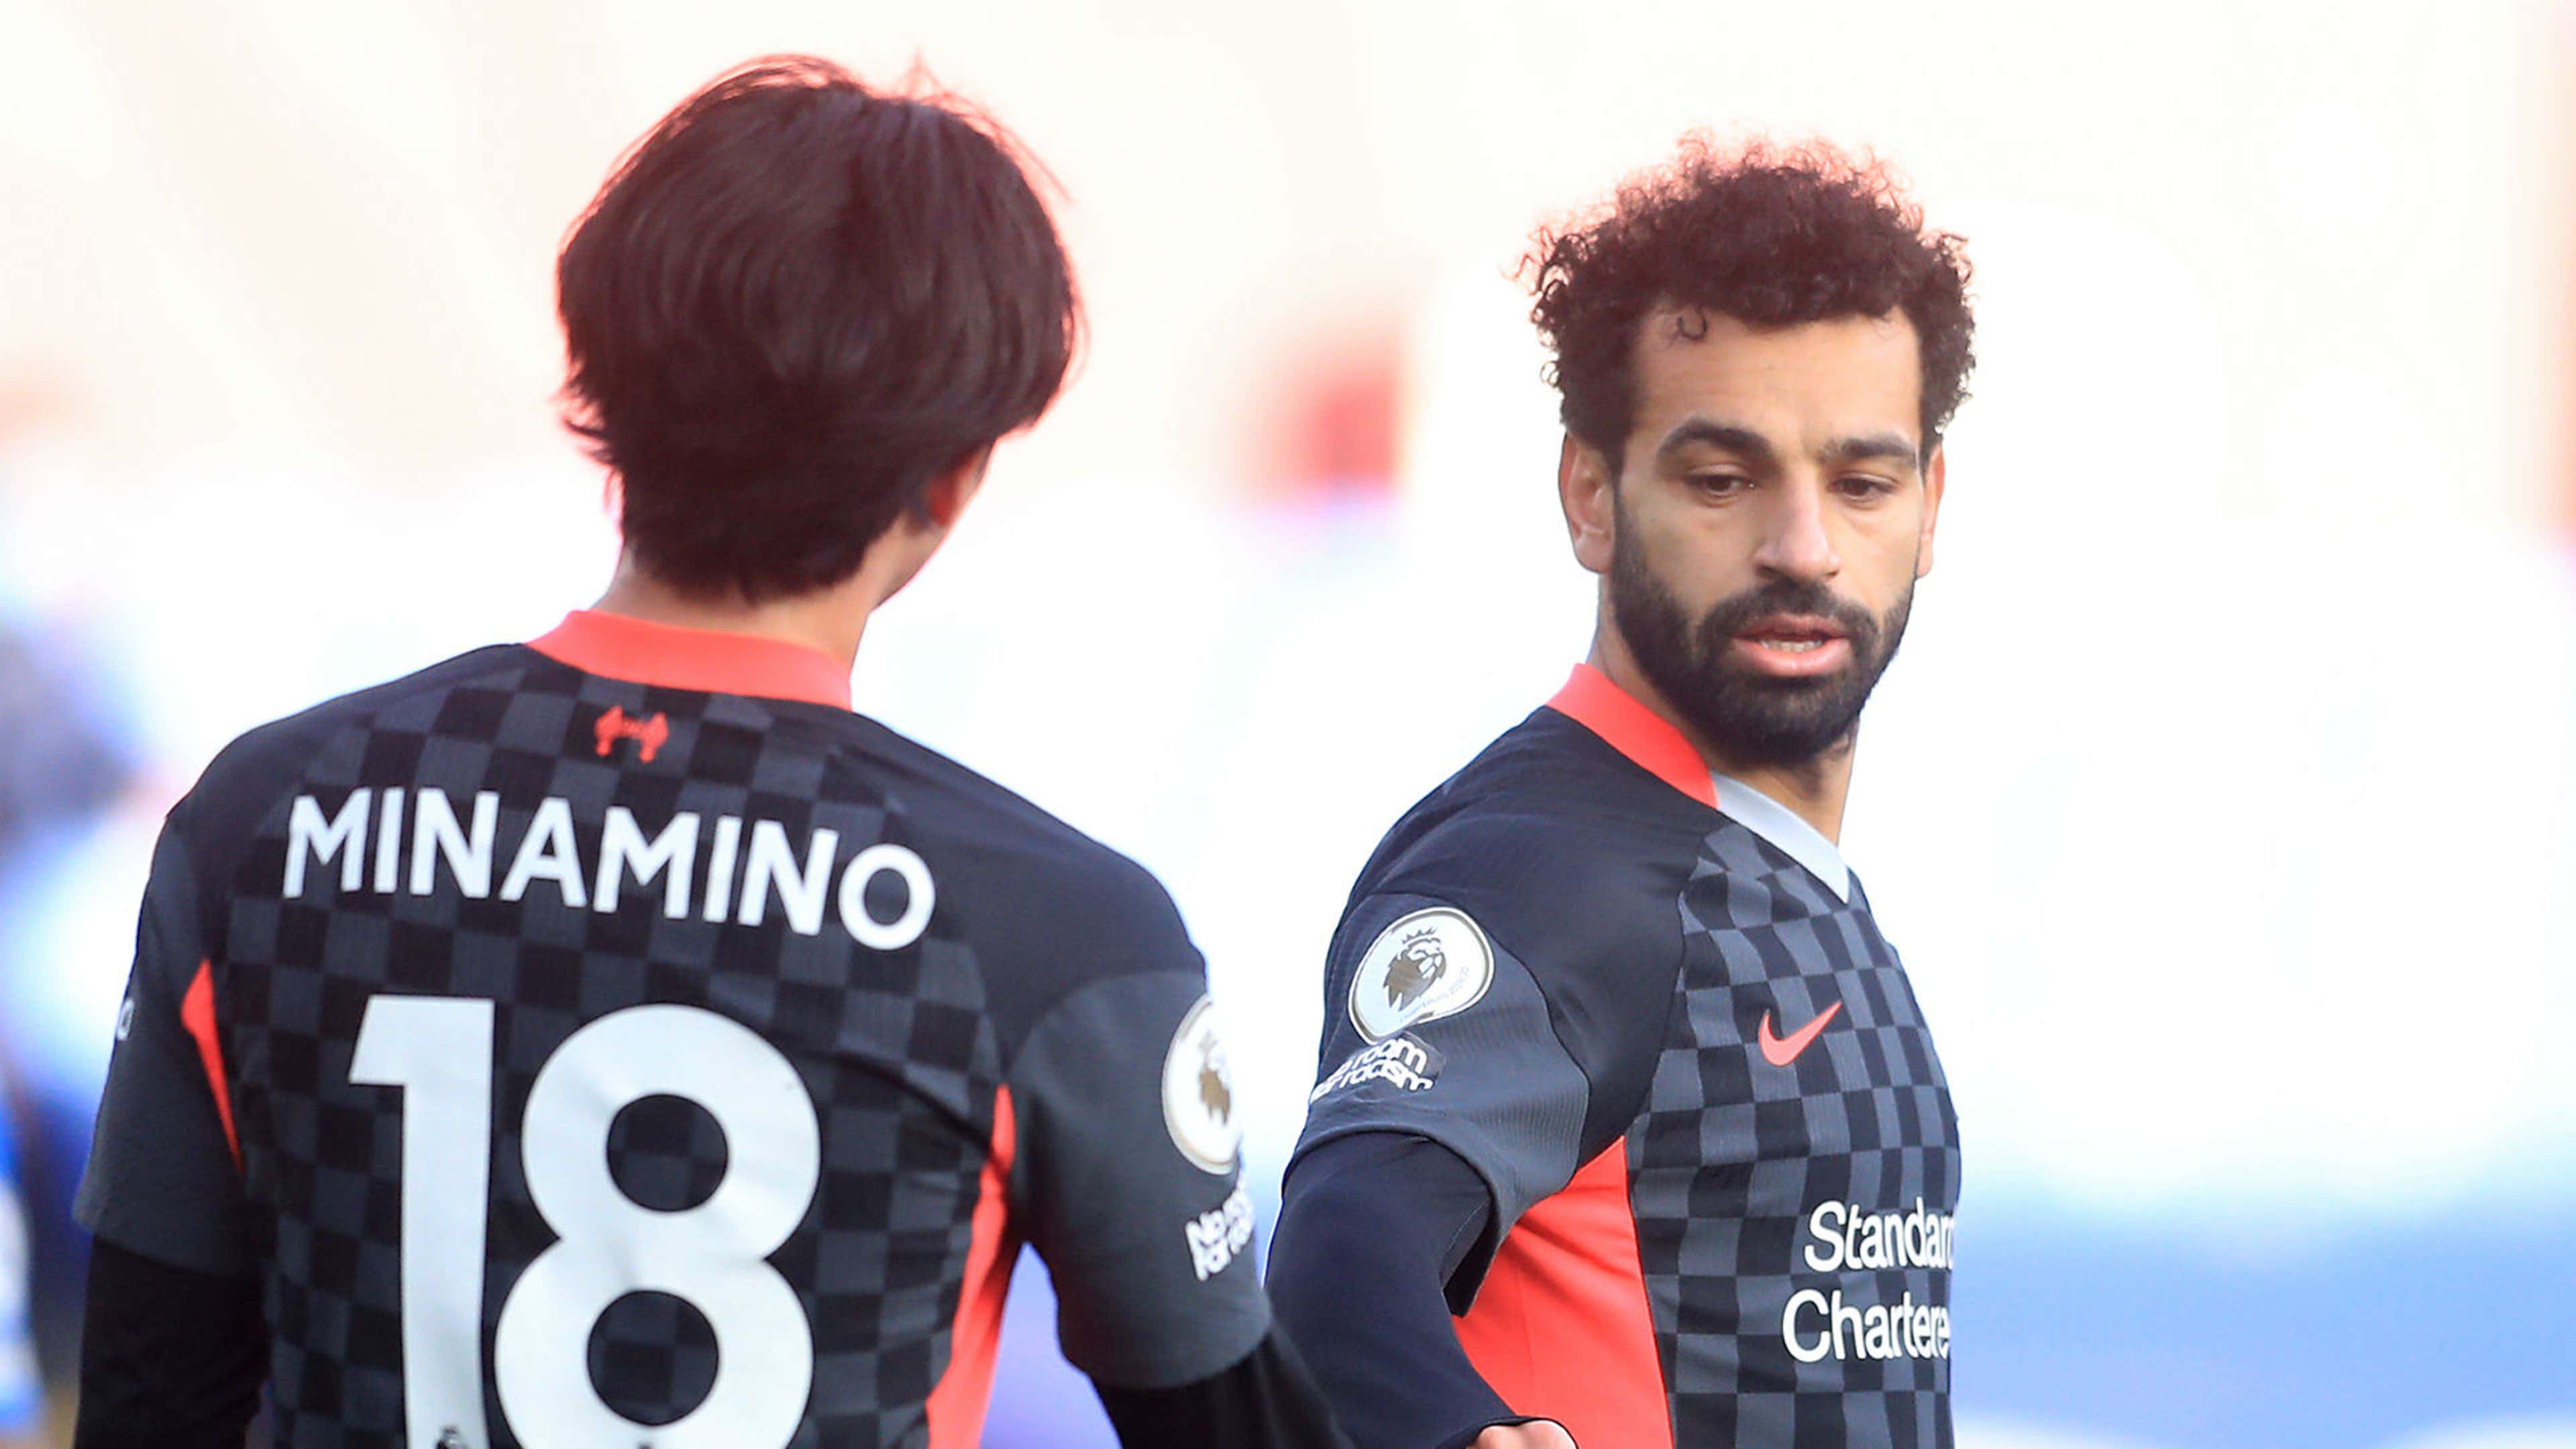 Takumi Minamino Mohamed Salah Liverpool Crystal Palace 2020-21